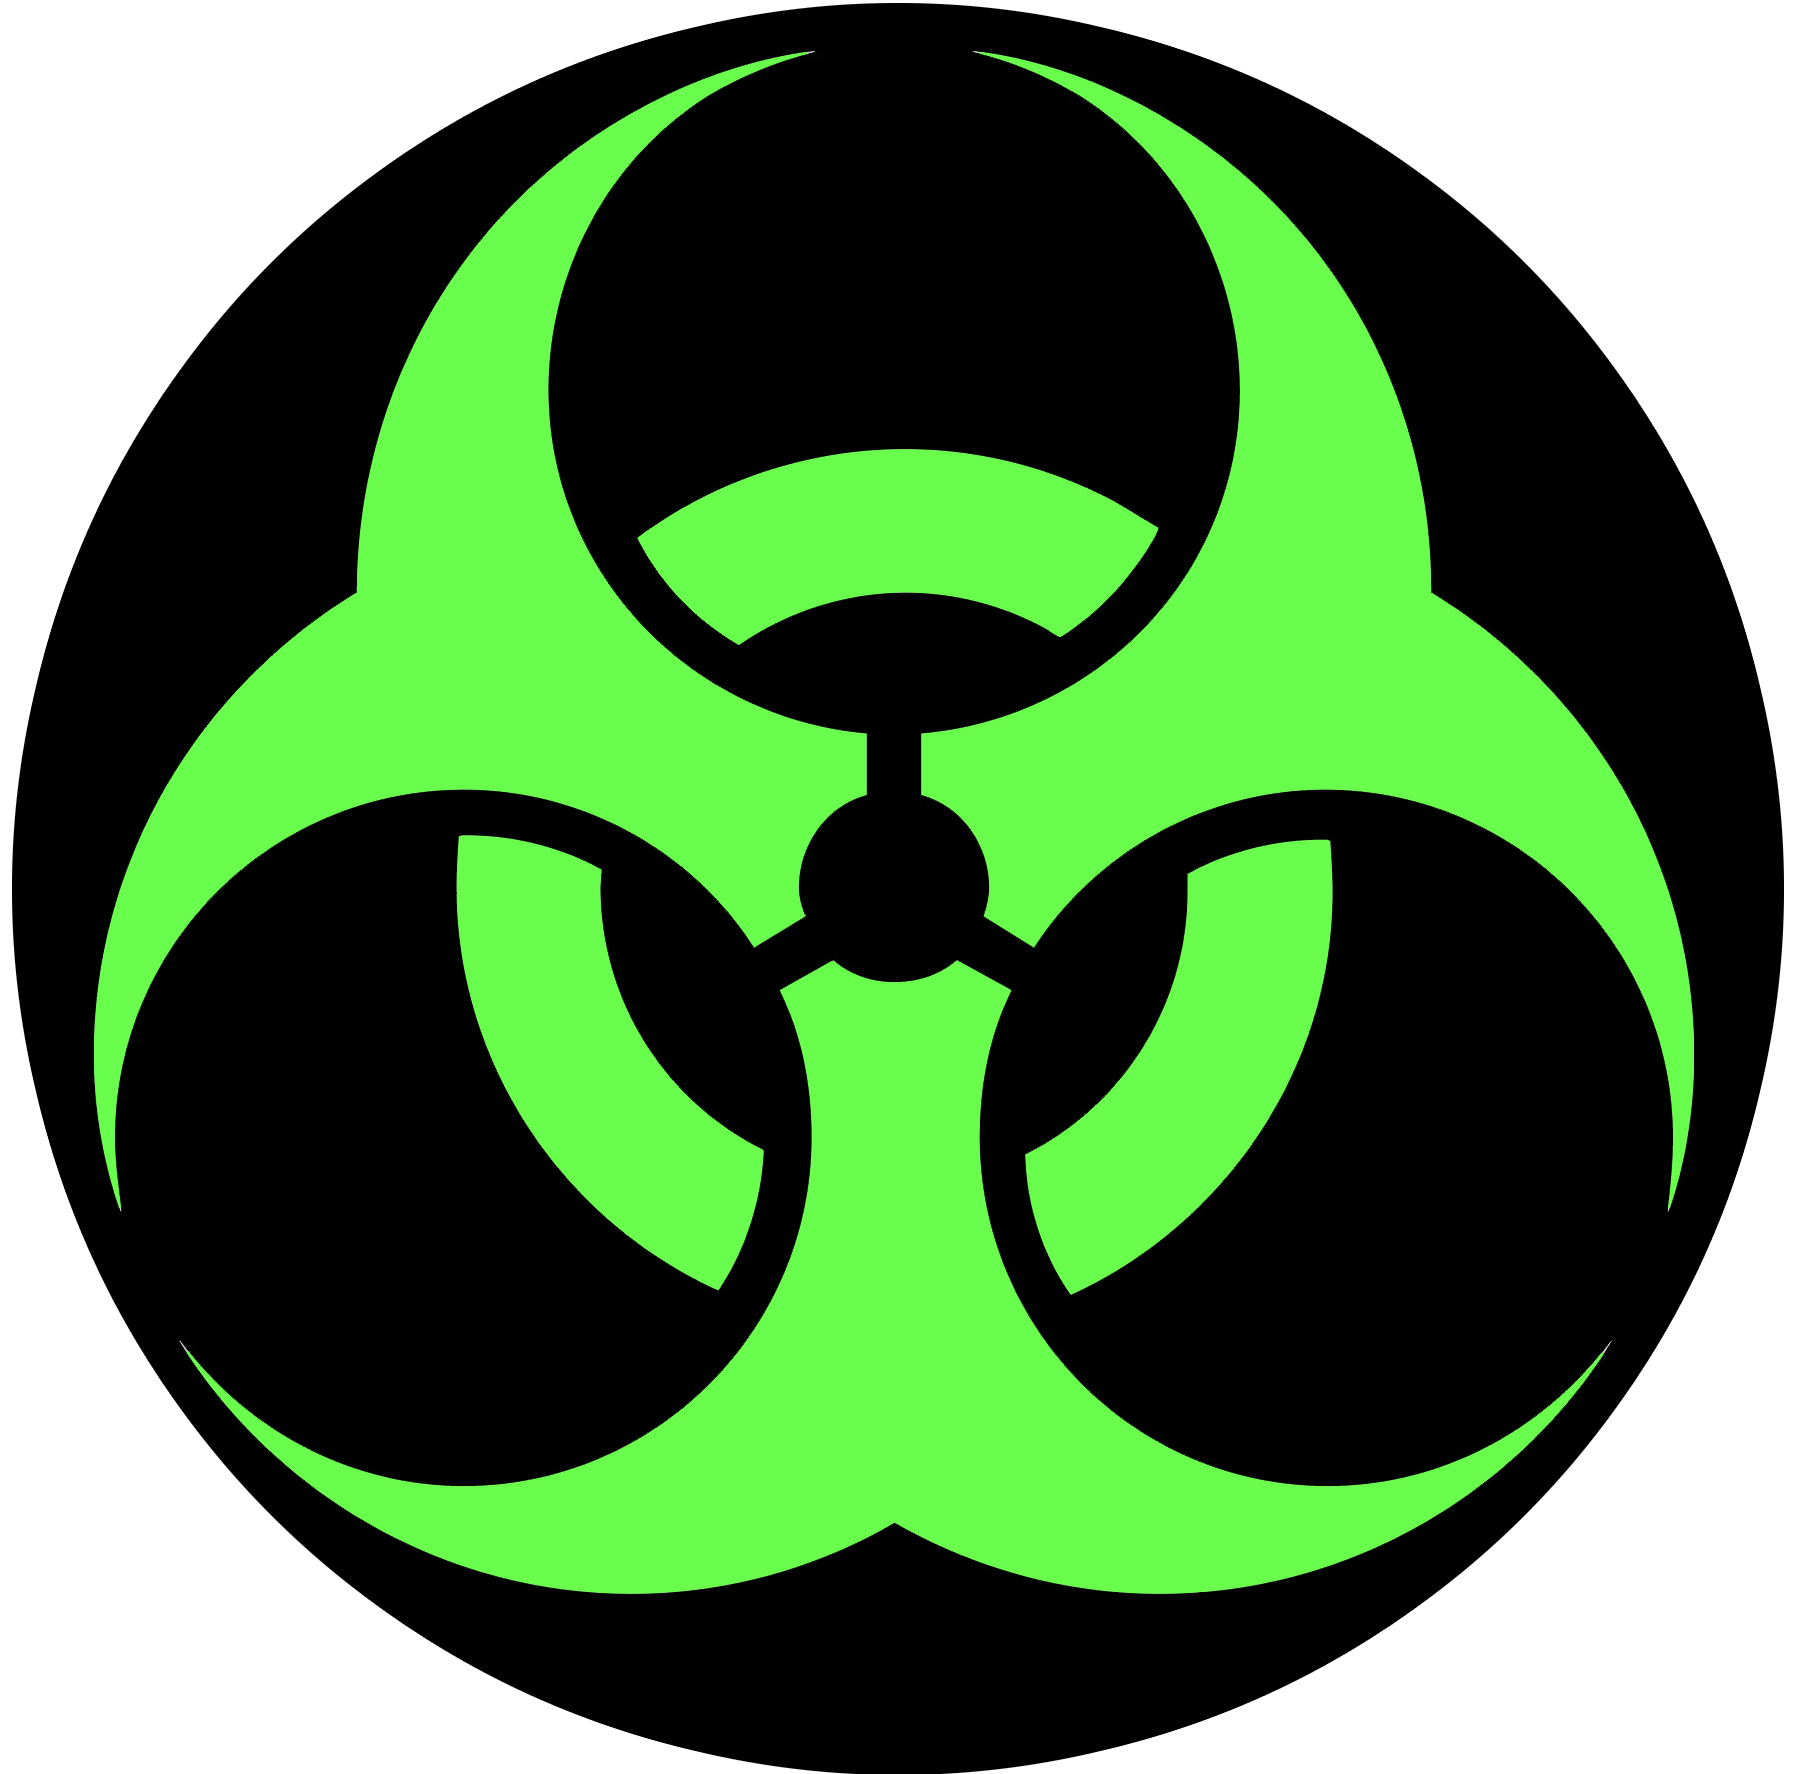 Джеки токсик. Токсик биохазард. Знак биологической опасности - биохазард. Знак атомной радиации. Значок радиации.